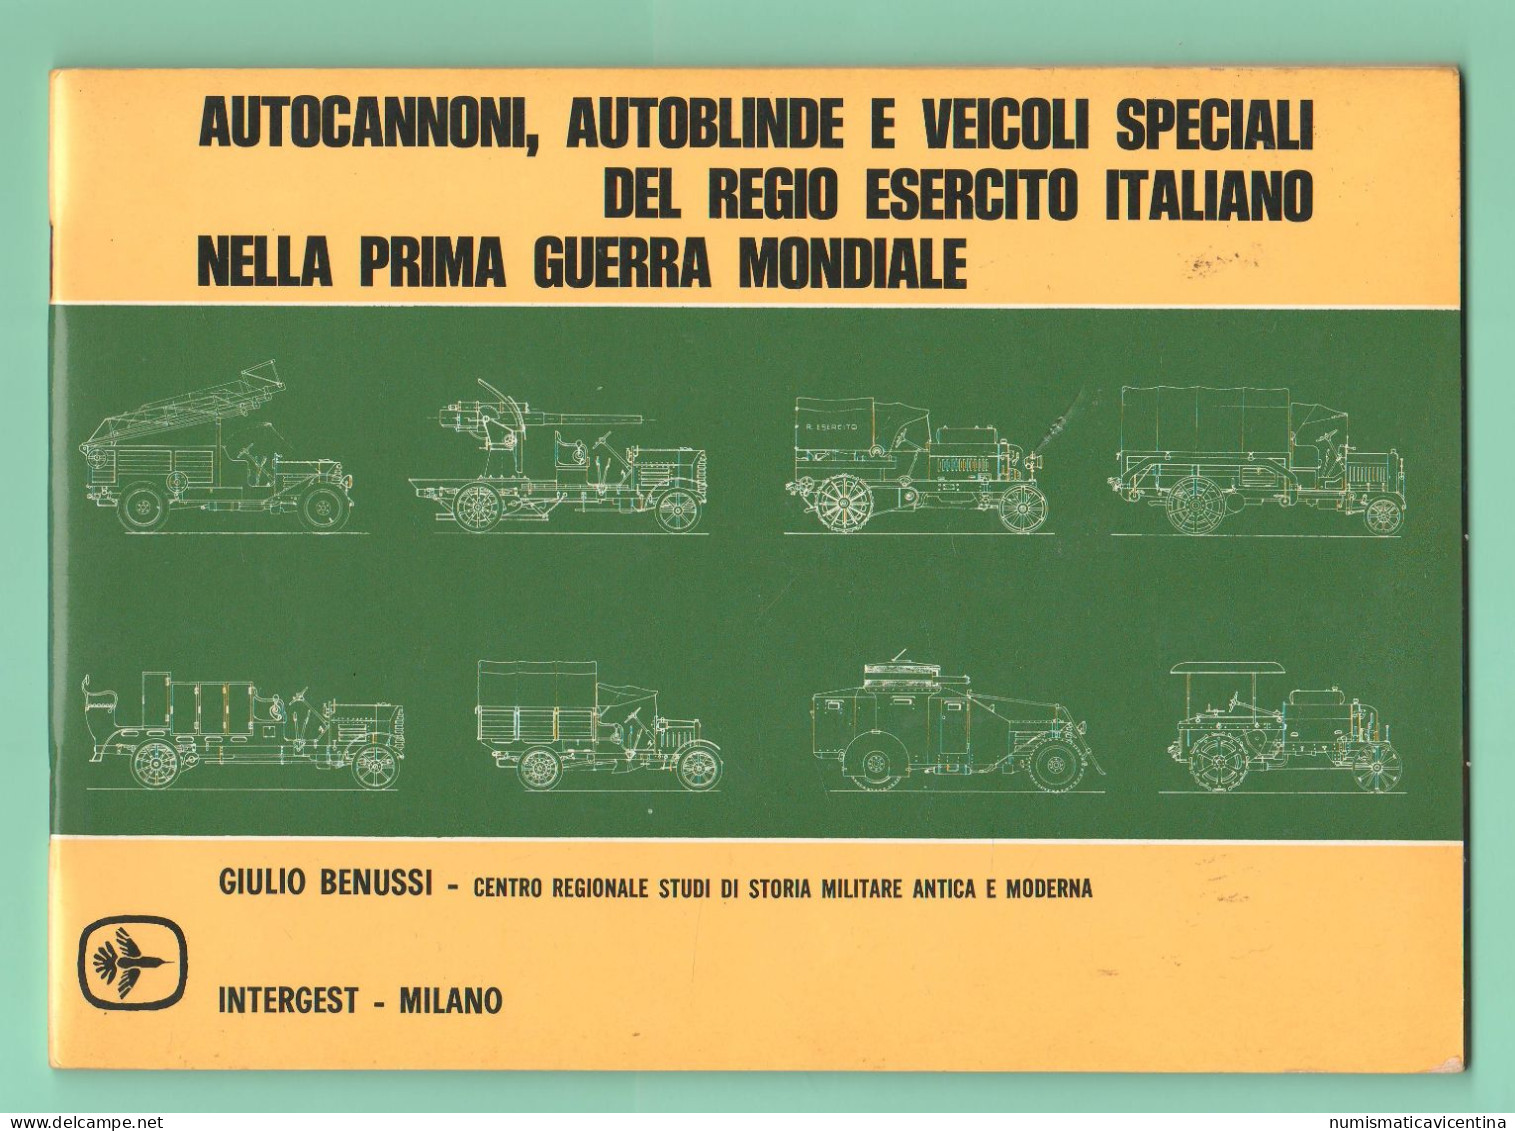 Regio Esercito Libro Autoblindo Autocannoni Veicoli Speciali Nella Prima Guerra Mondiale Military Vehicles 1st WW - Italiano